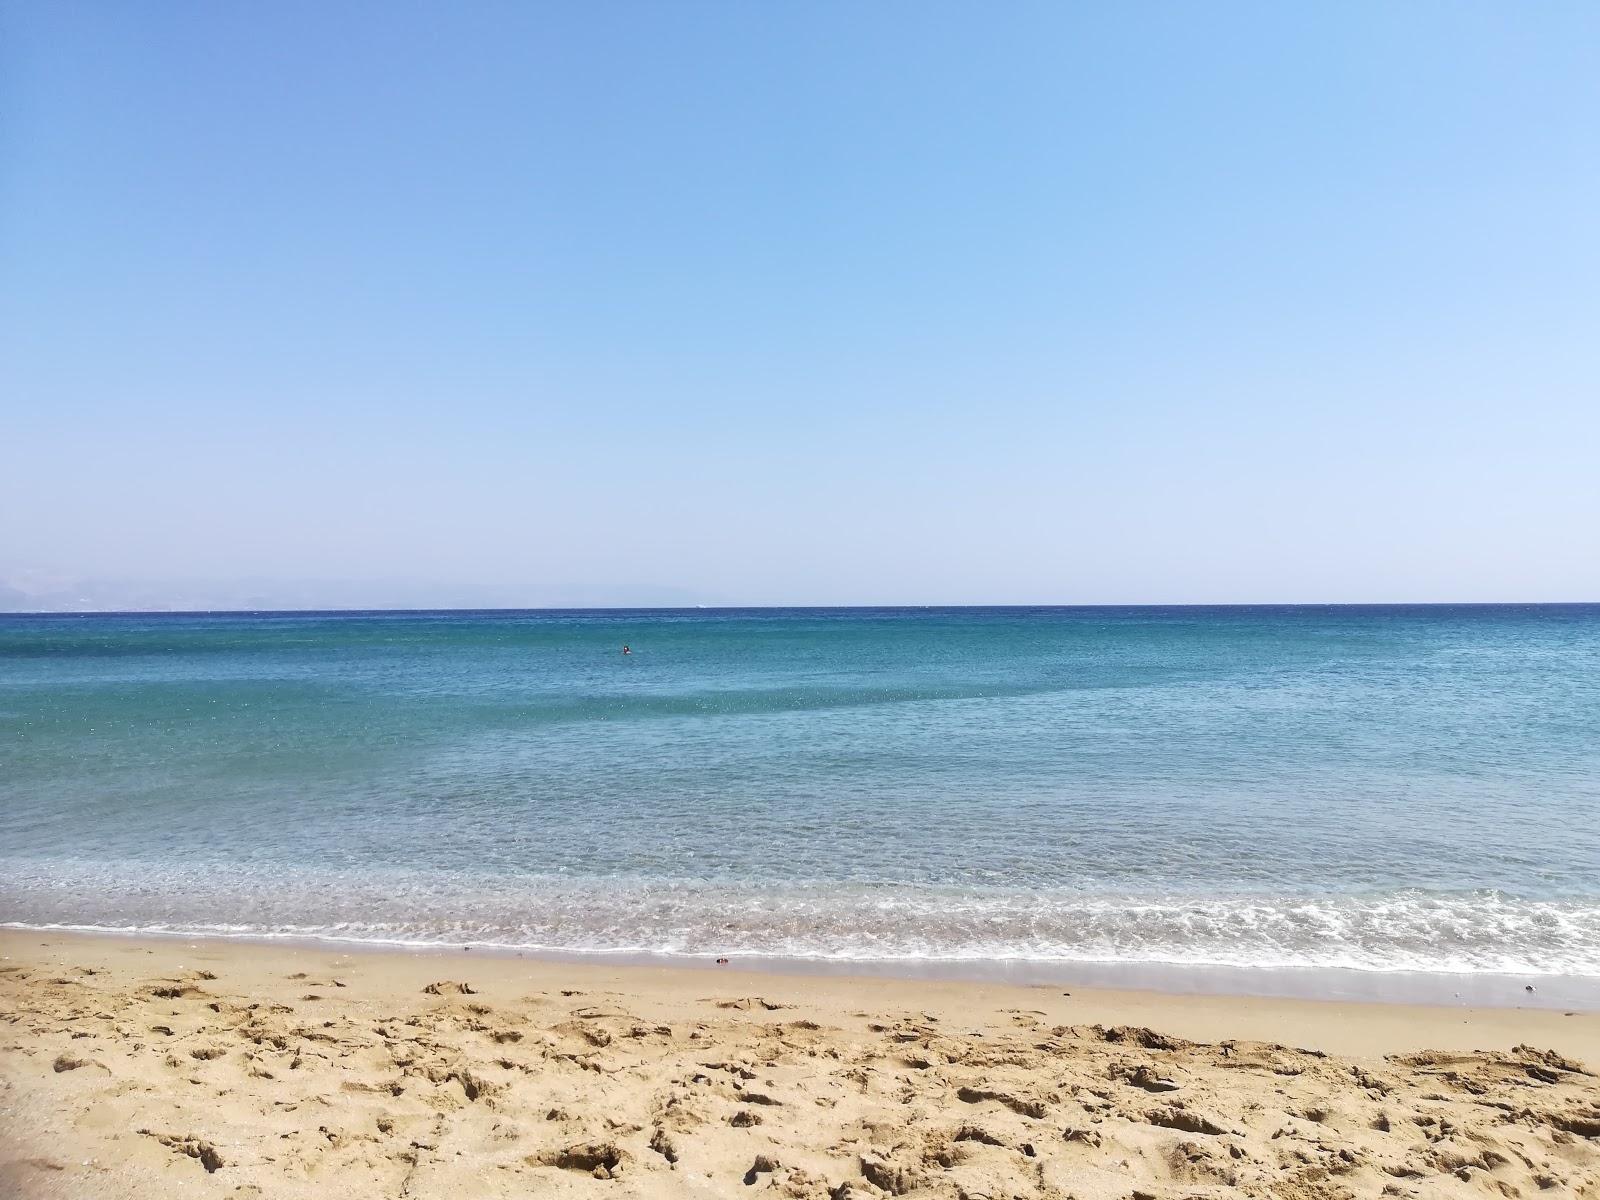 Foto von Kalogeros beach mit geräumige bucht